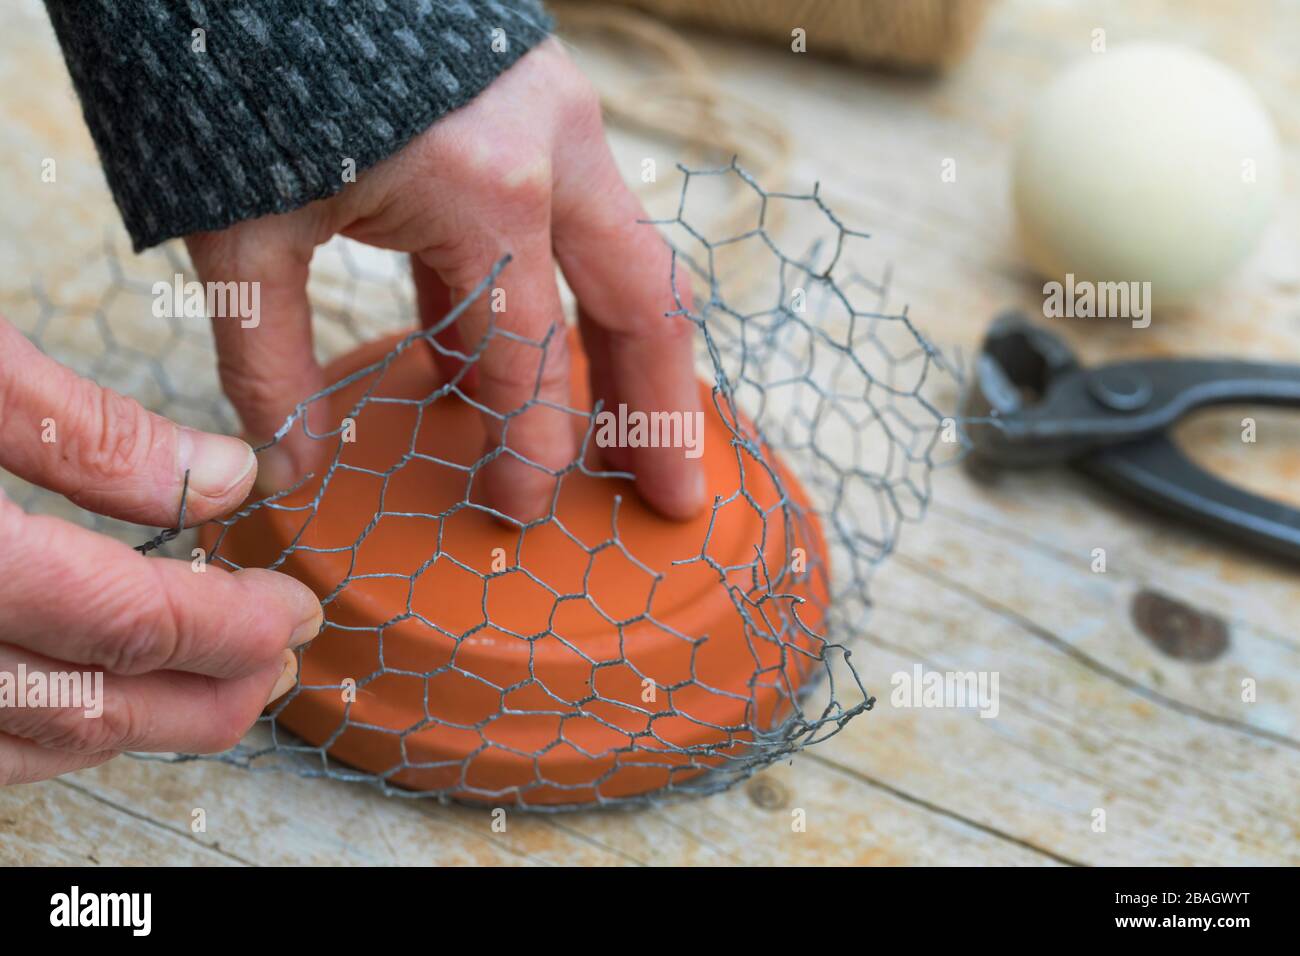 Fabrication d'un support pour boules de graisse, série photo 2/6, Allemagne Banque D'Images